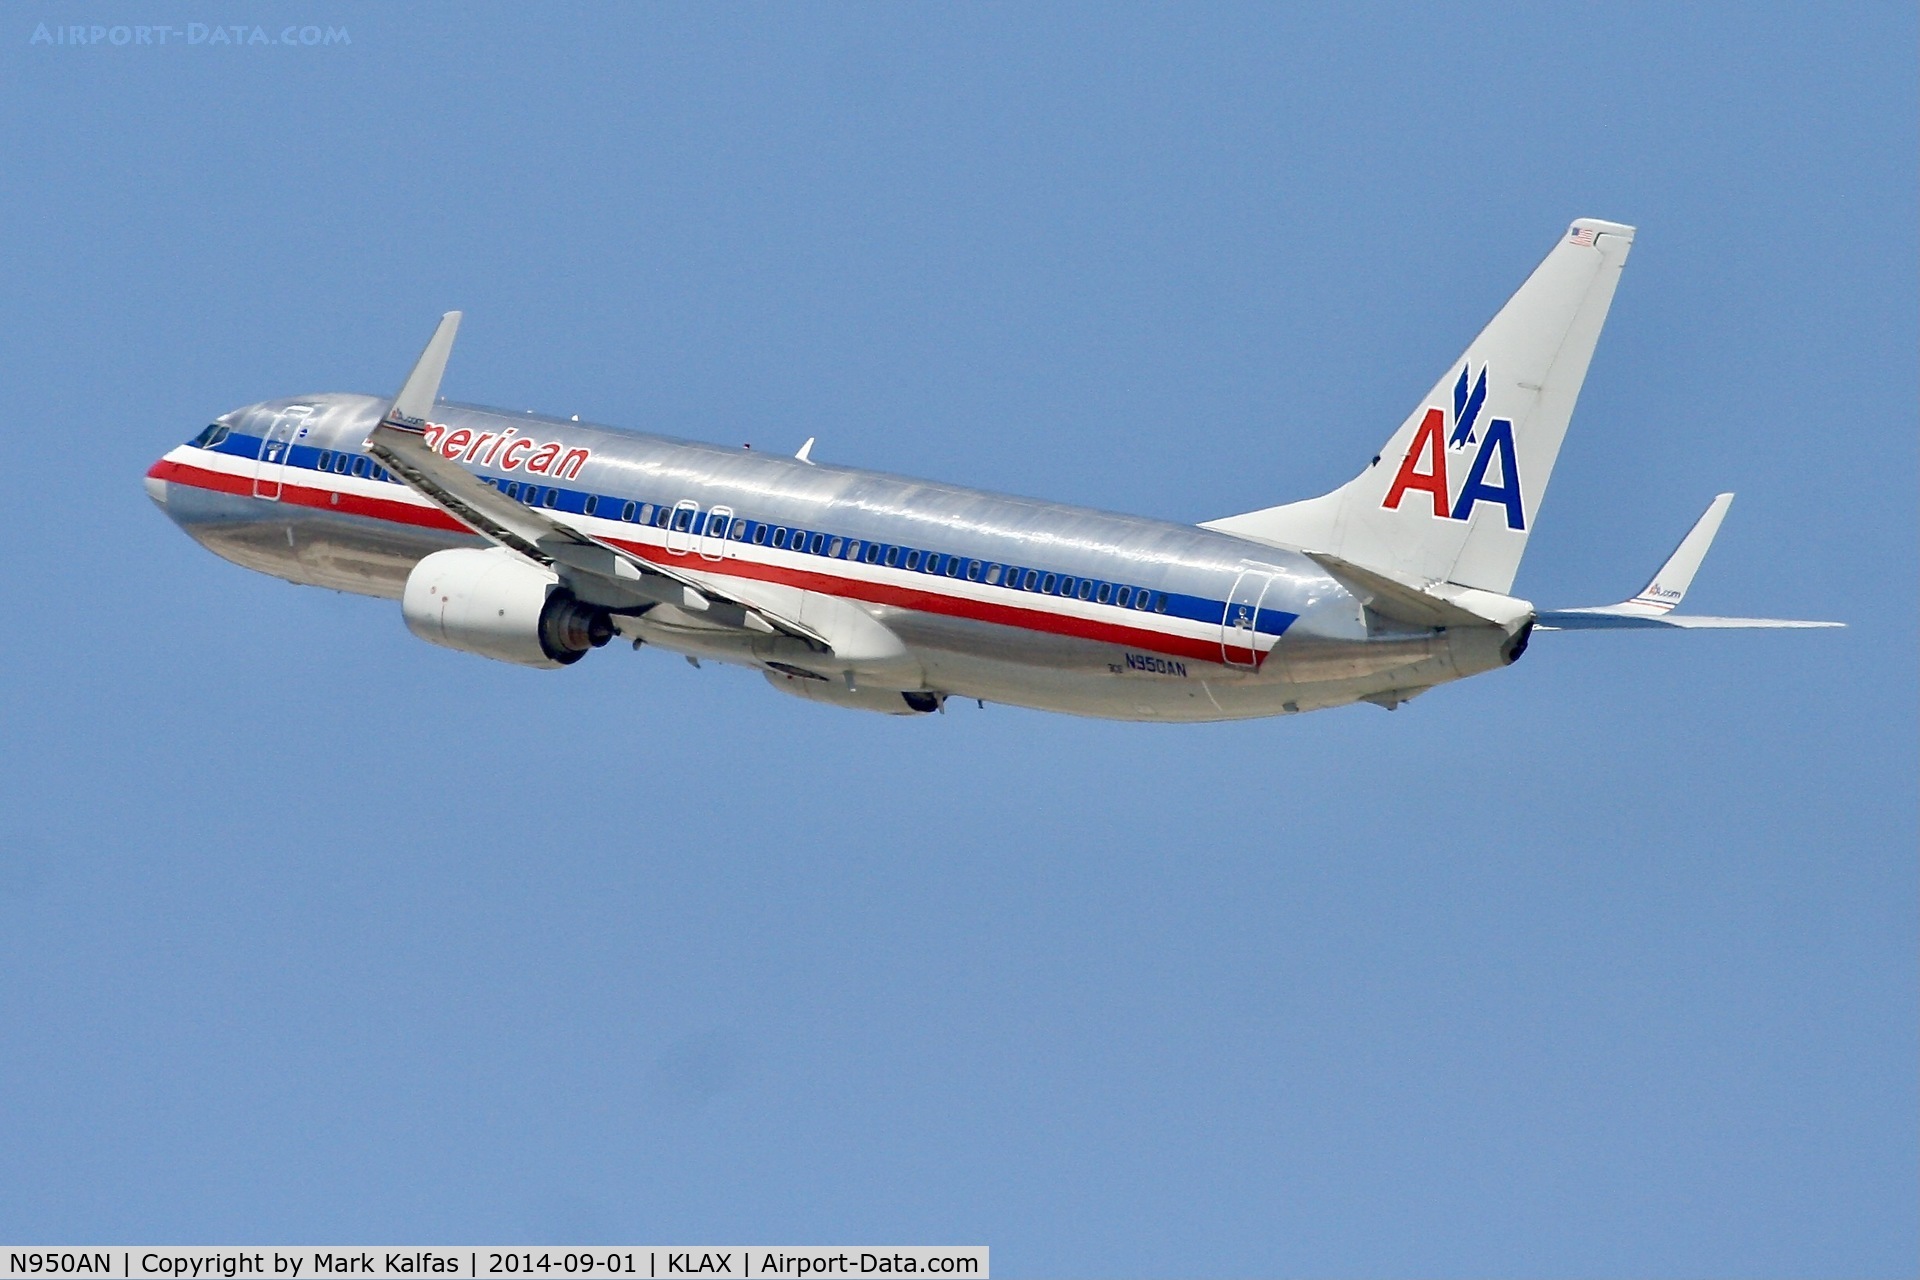 N950AN, 2000 Boeing 737-823 C/N 30087, American Boeing 737-823, N950AN departing 25R LAX